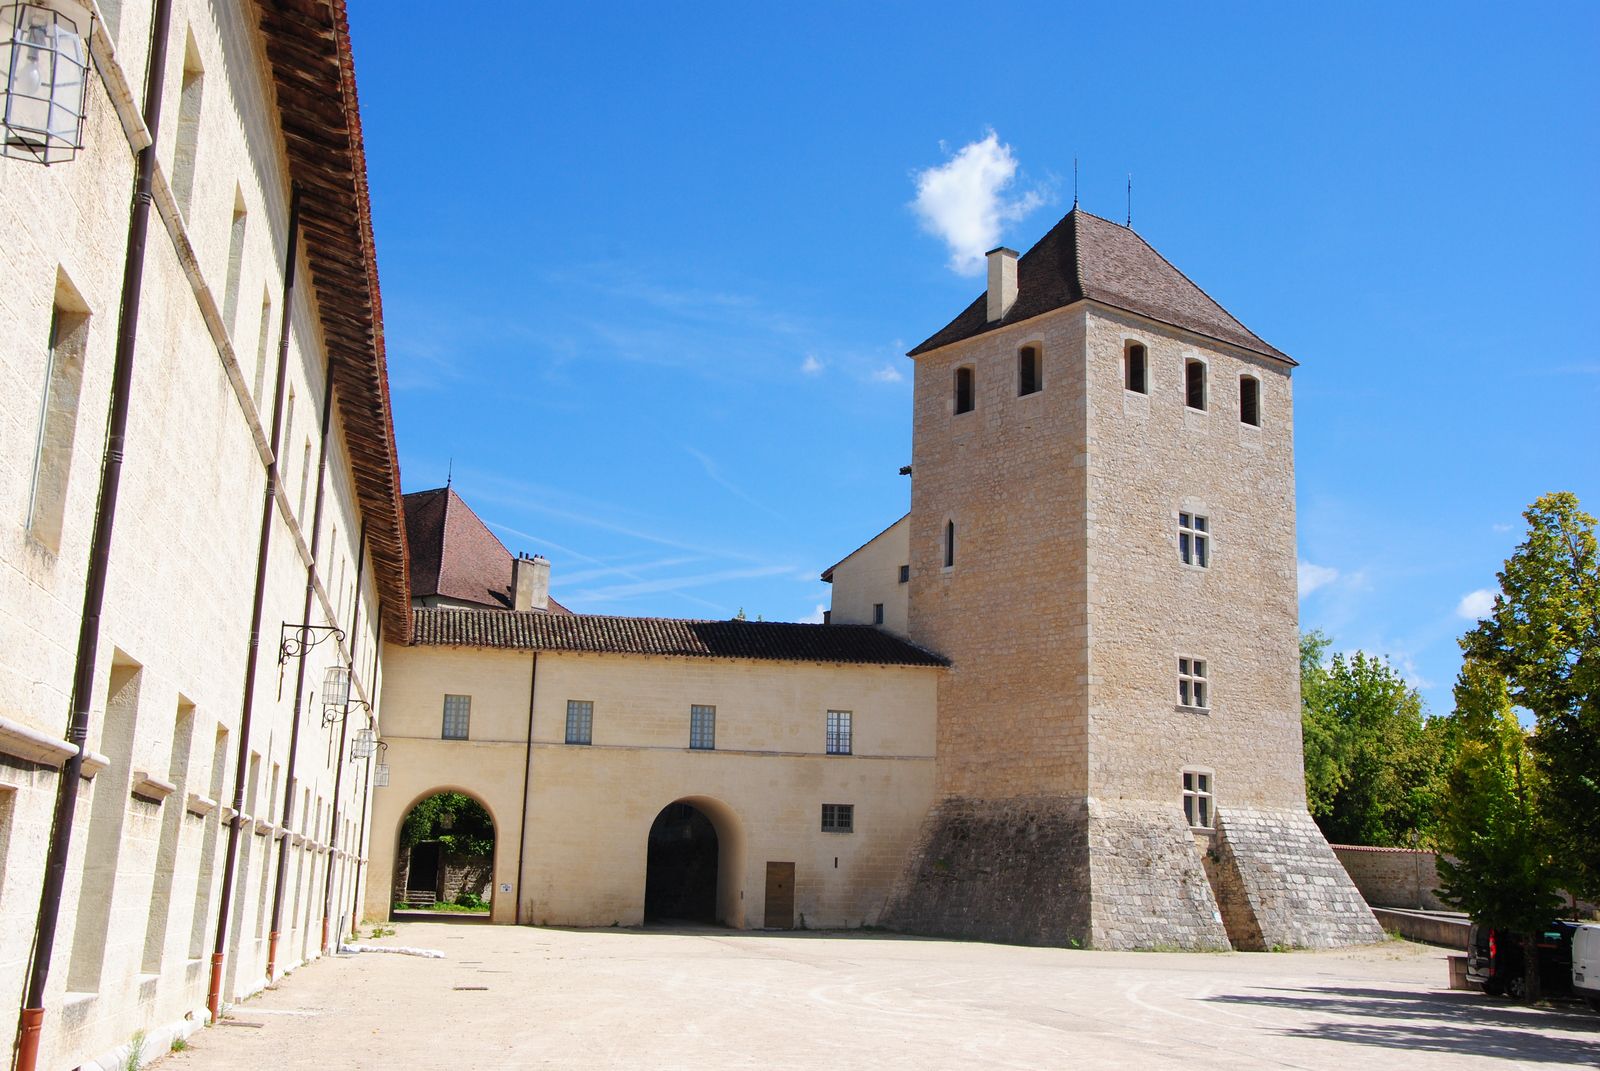 Une des tours fortifiées de l'abbaye (photo E. Coux)